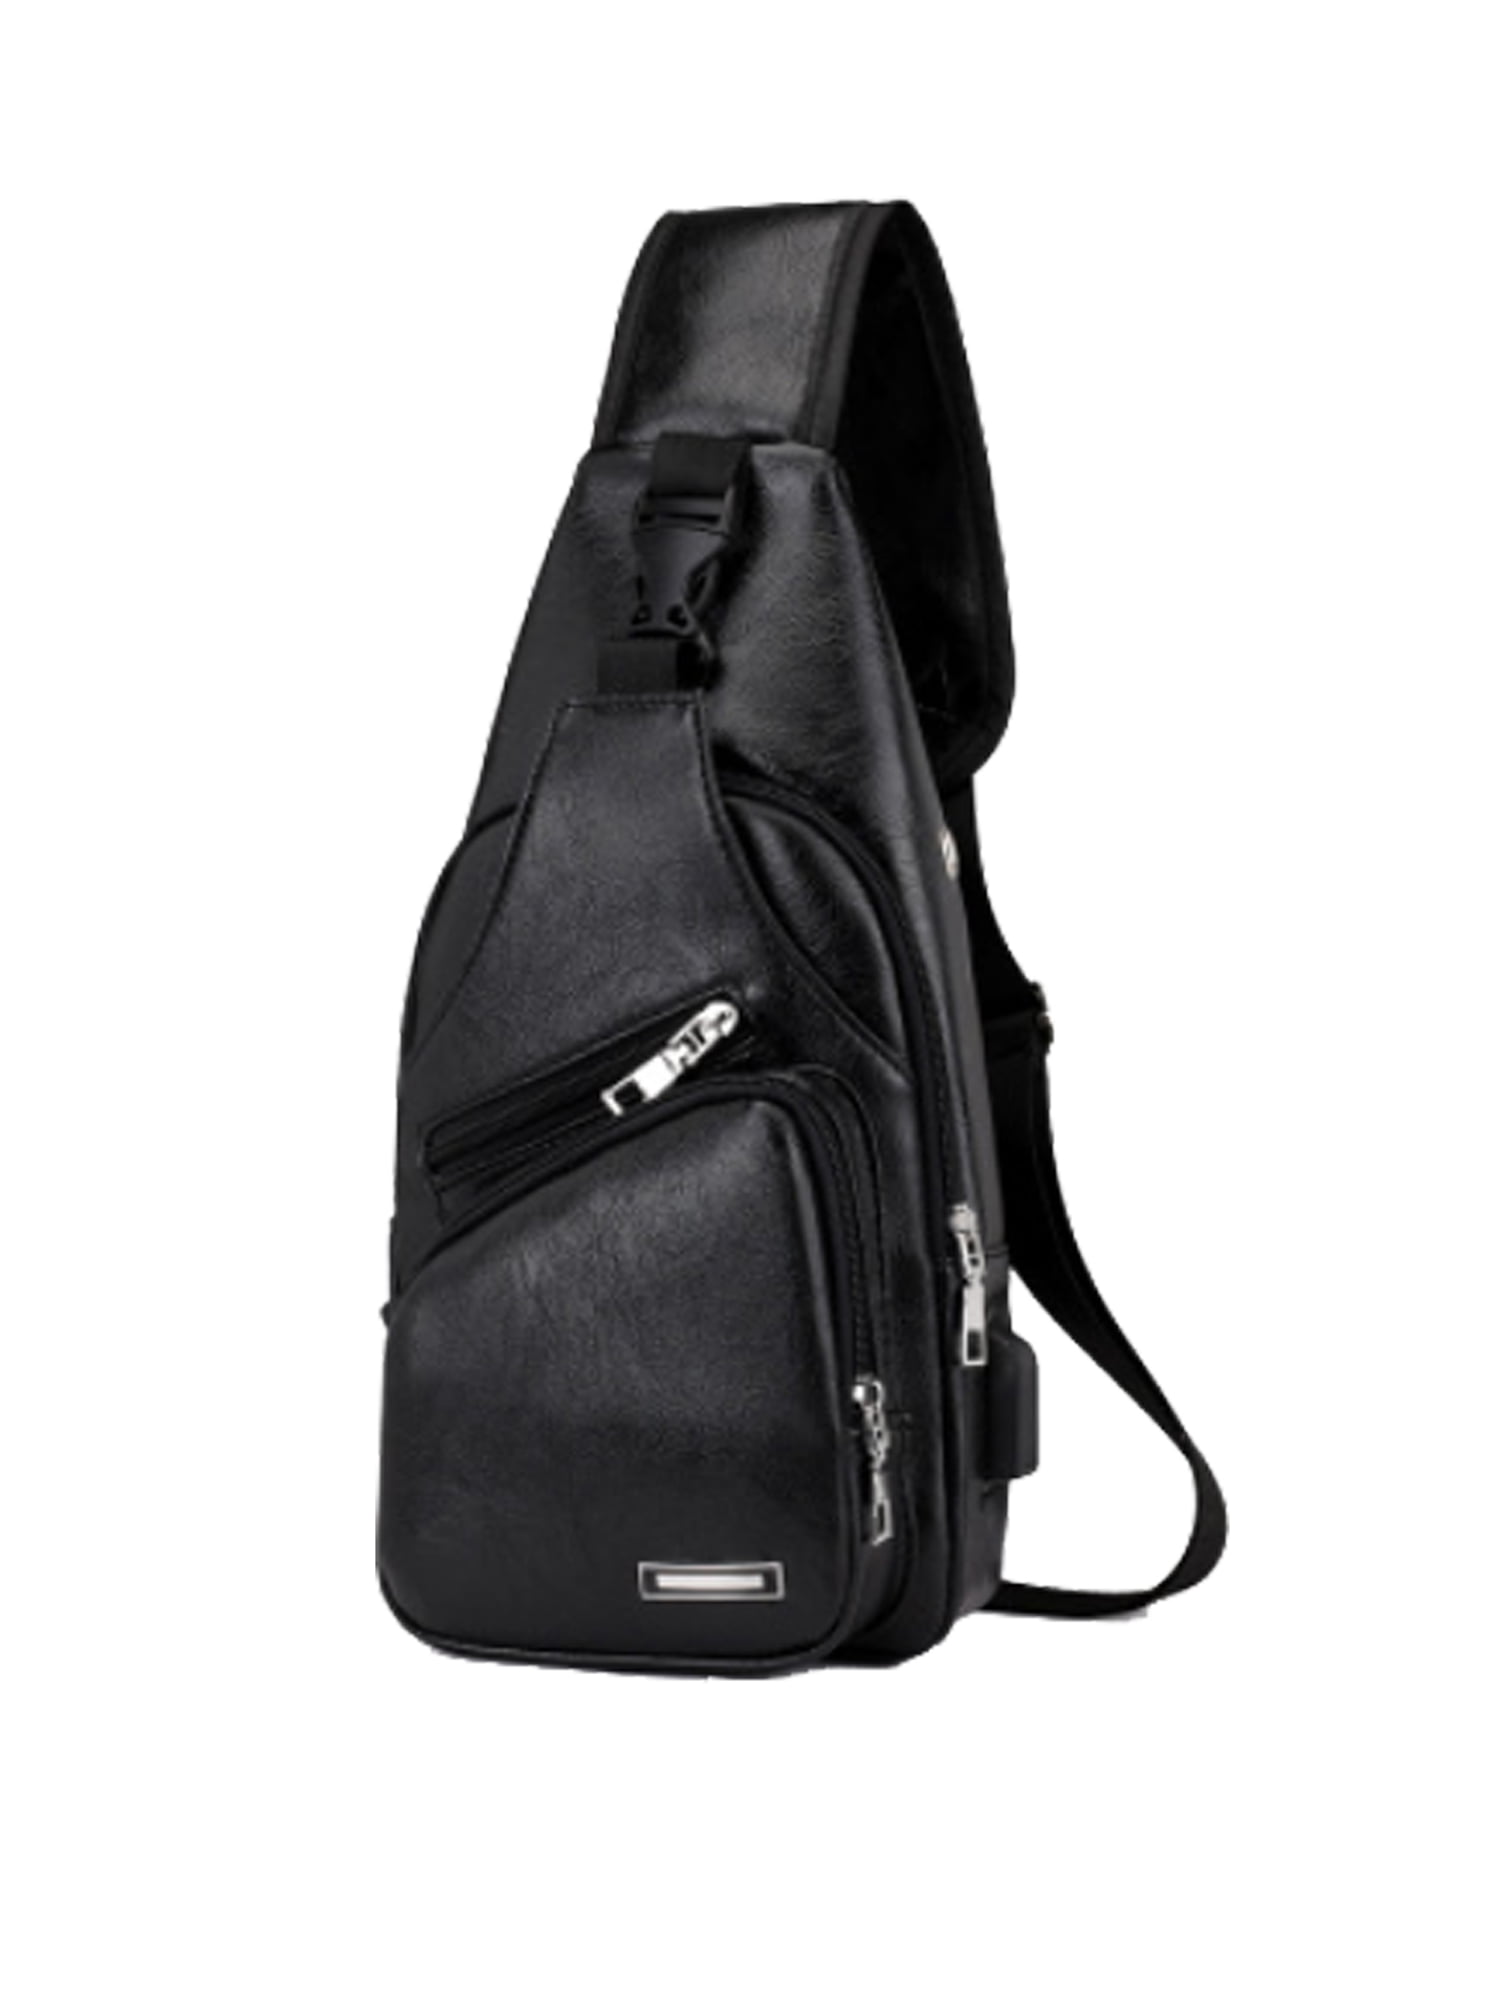 Men Leather Chest Bag Shoulder Sling Pack USB Charging Sport Crossbody Backpack 